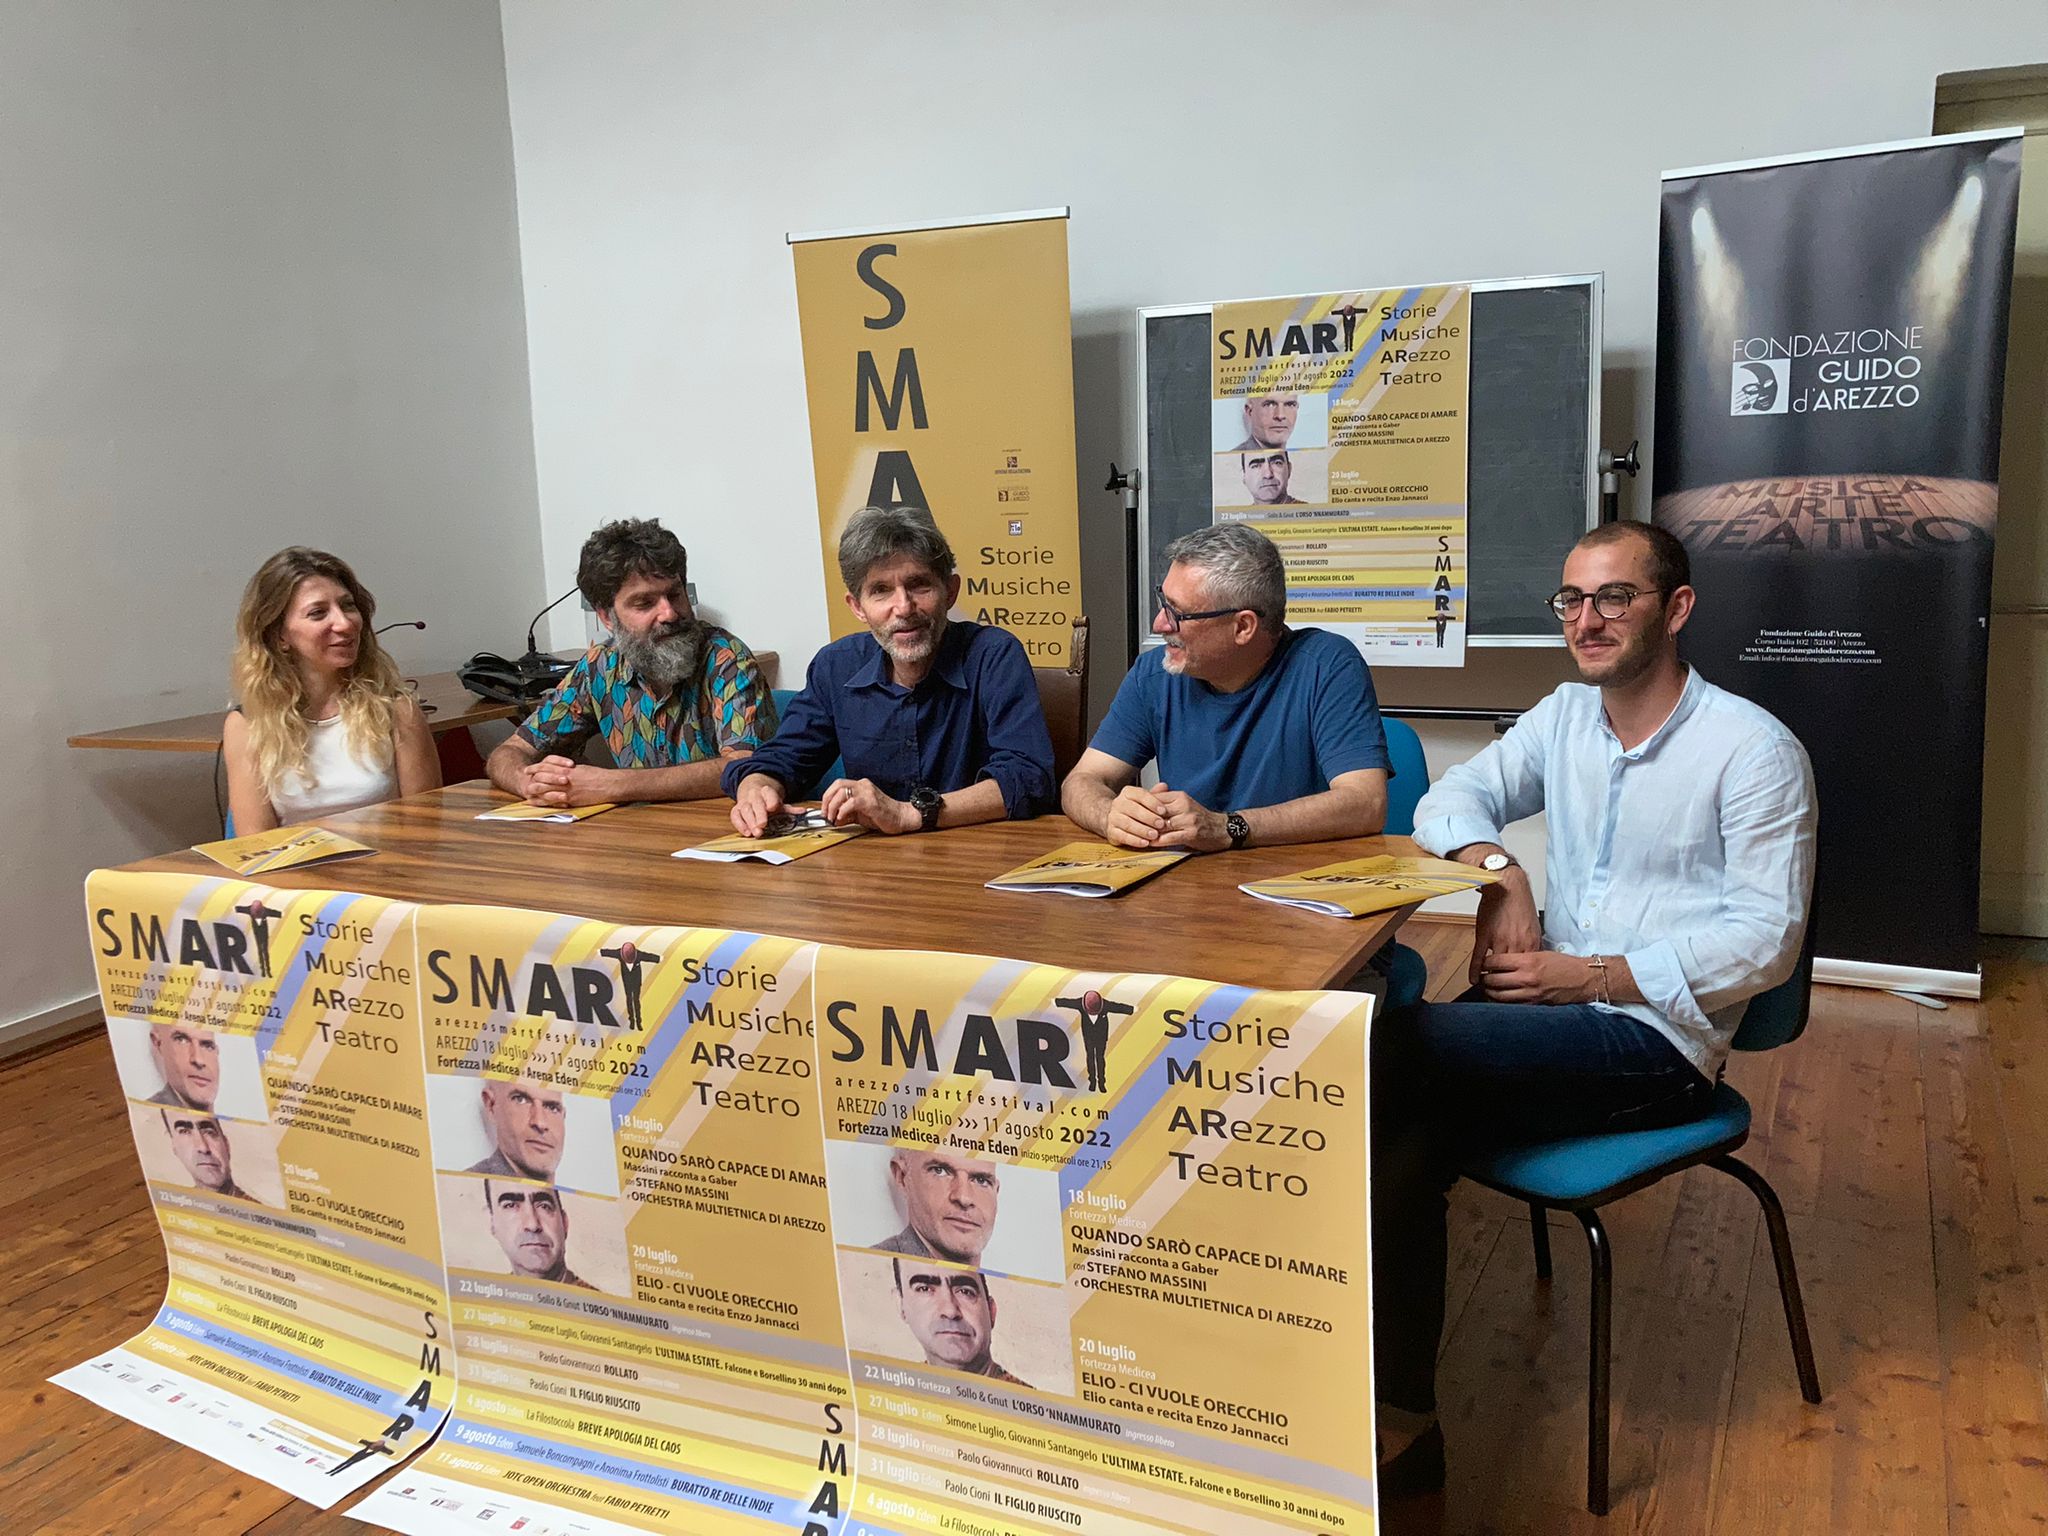 SmARt: al via la seconda edizione del festival multidisciplinare di Arezzo